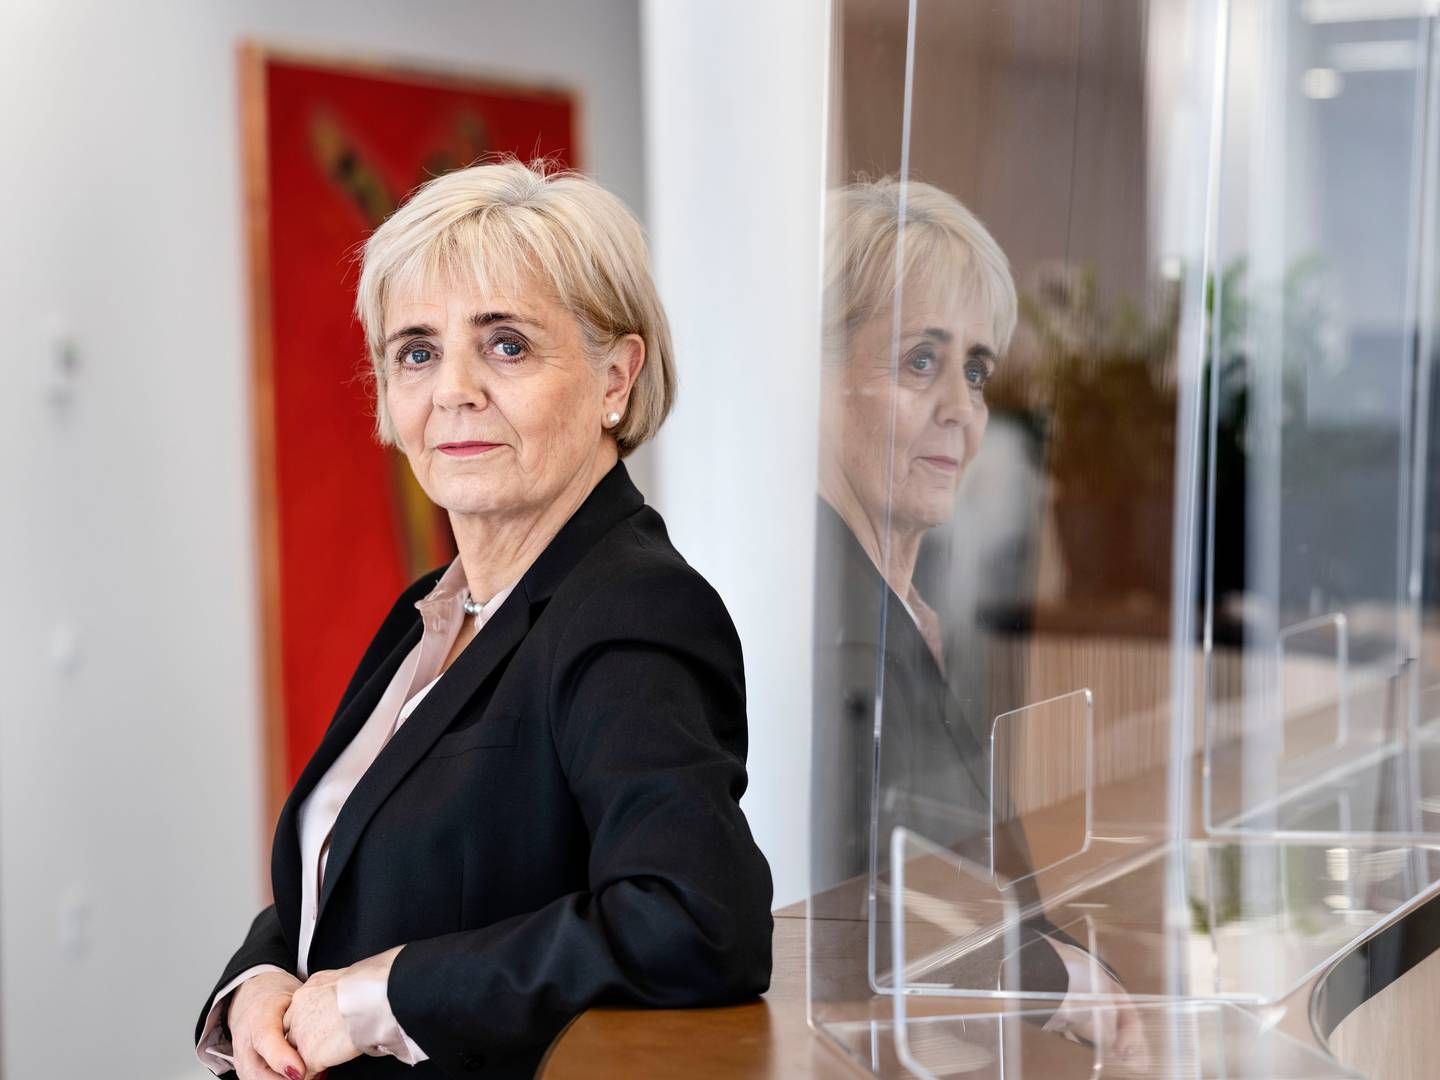 Den afgående adm. direktør i Sydbank, Karen Frøsig, indtræder 1. august i bestyrelserne i den familieejede danske skokoncern Ecco. | Foto: Les Kaner